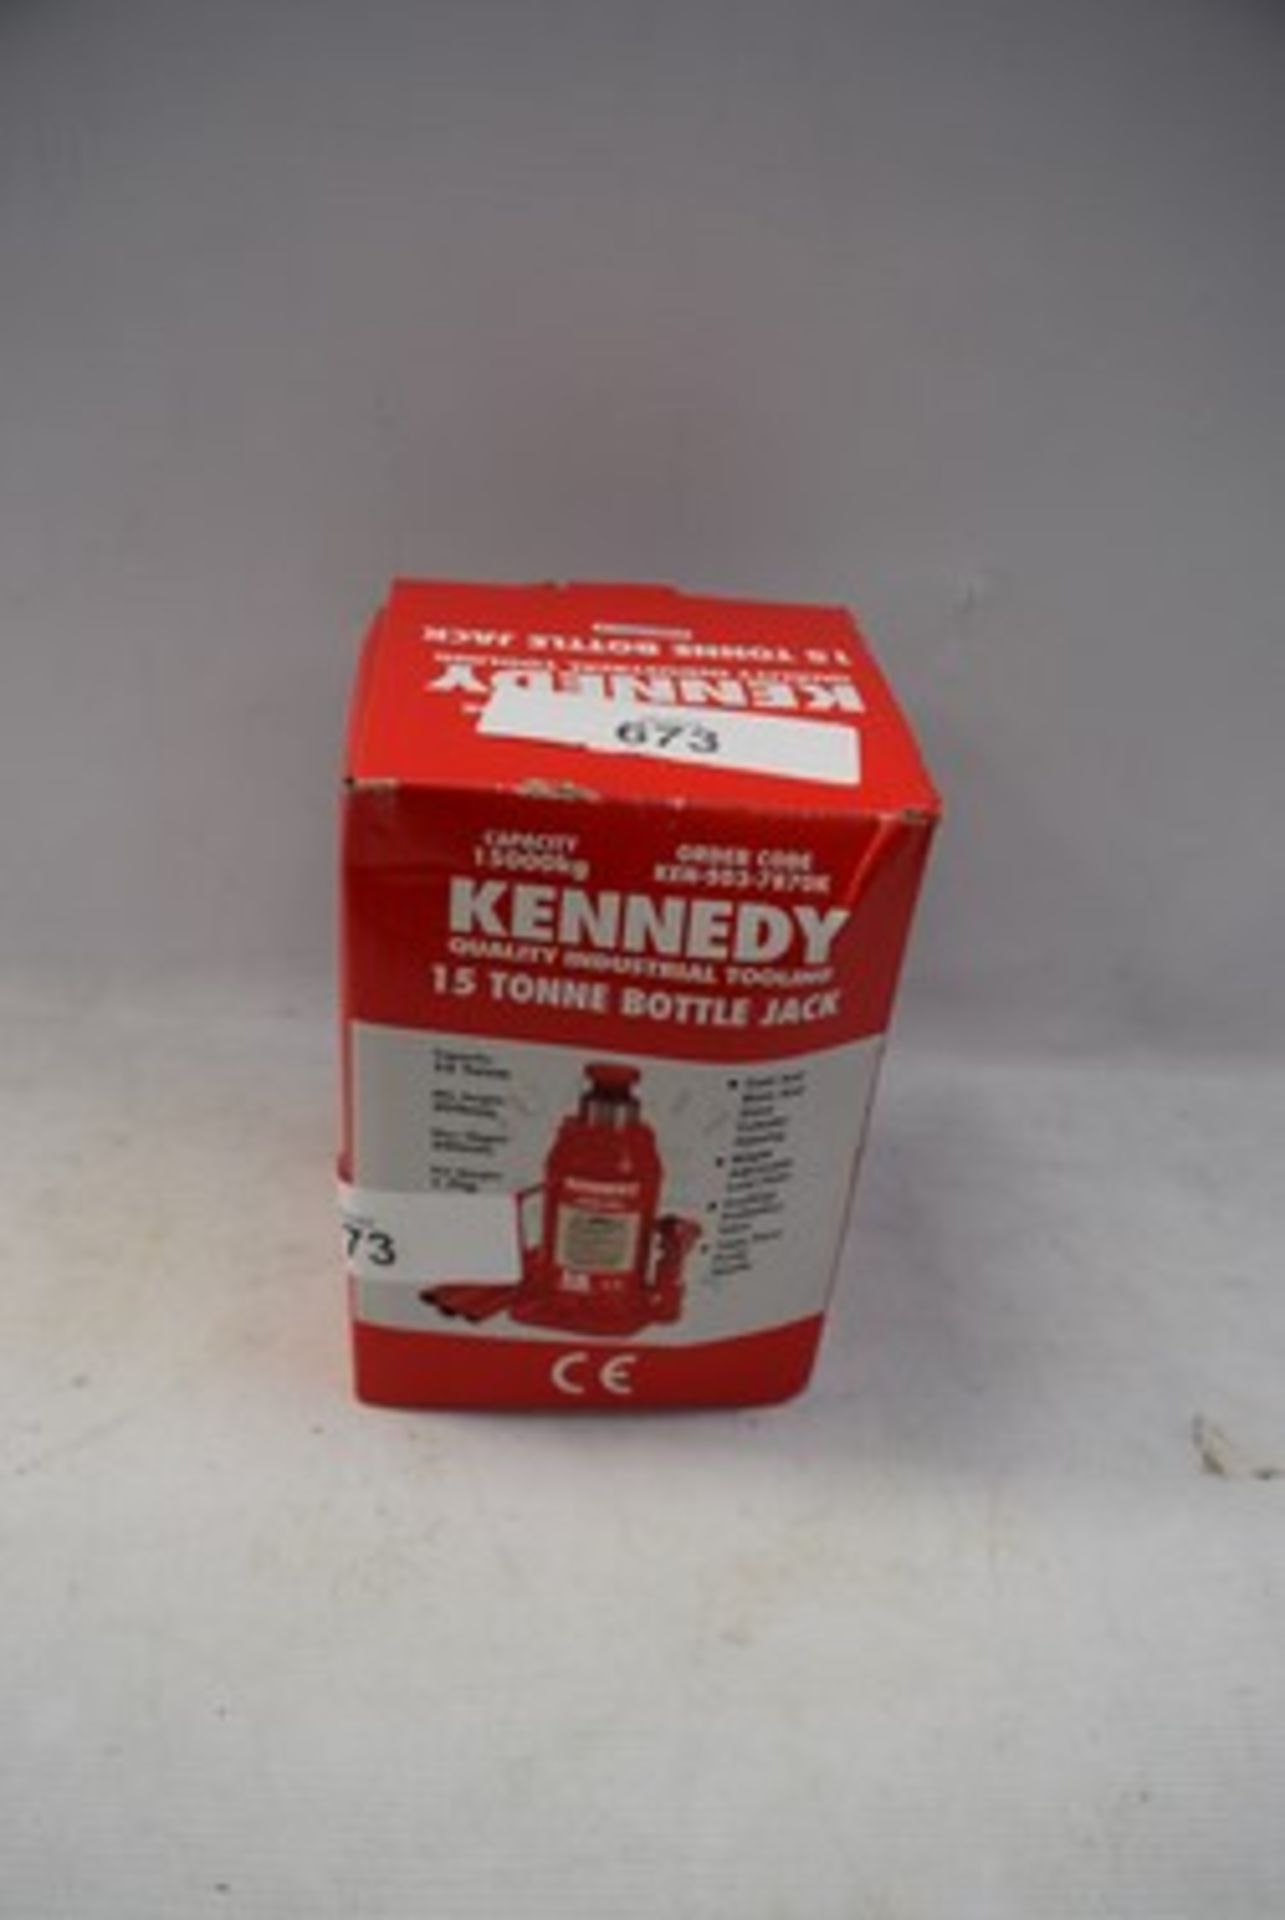 1 x Kennedy 15 tonne bottle jack - new in tatty box (GS0)